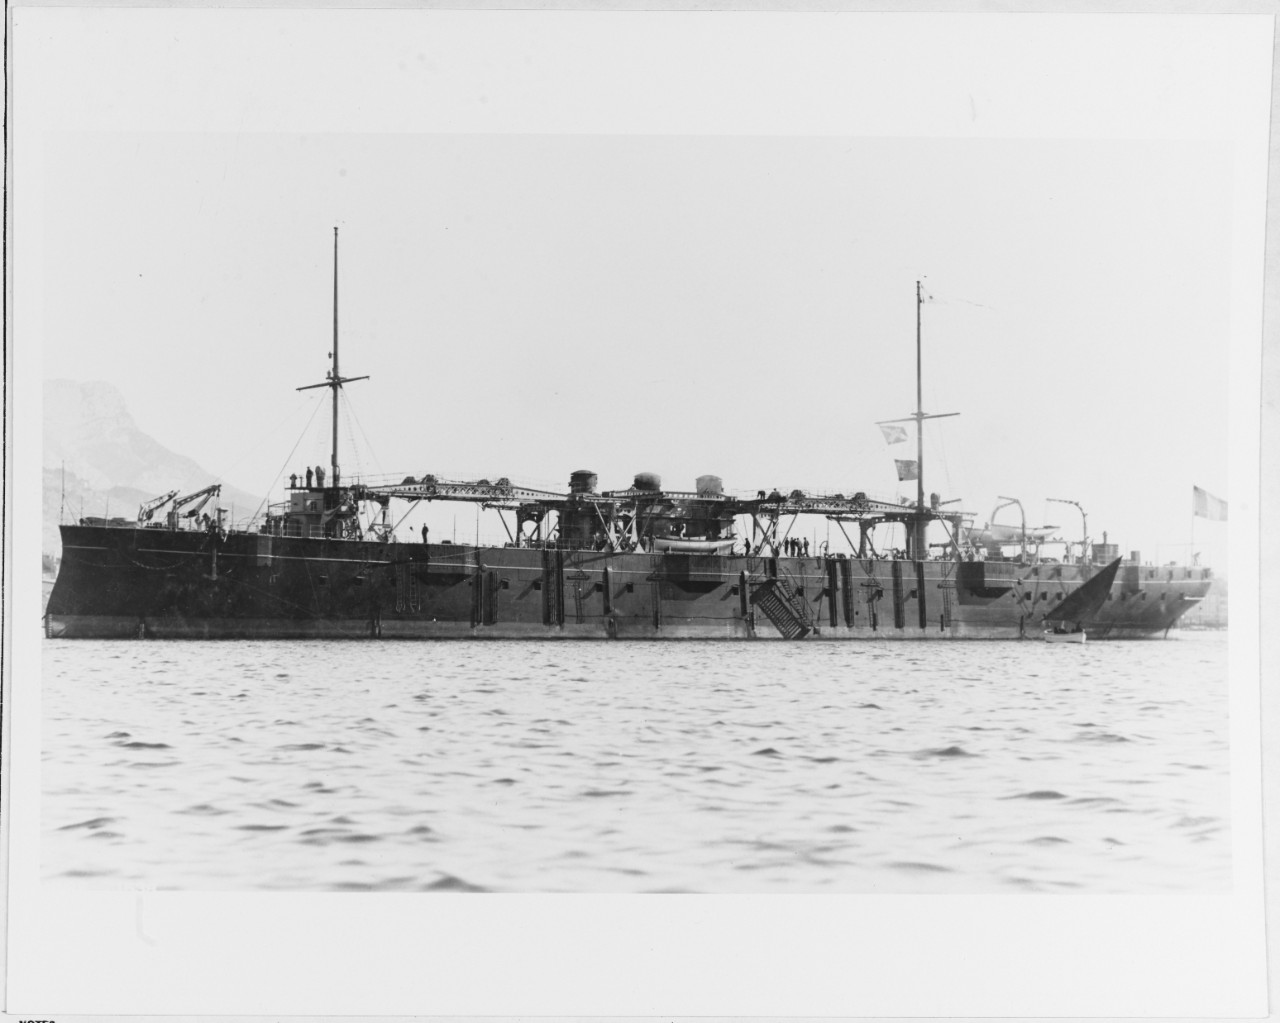 FOUDRE (French torpedo boat tender, 1895)